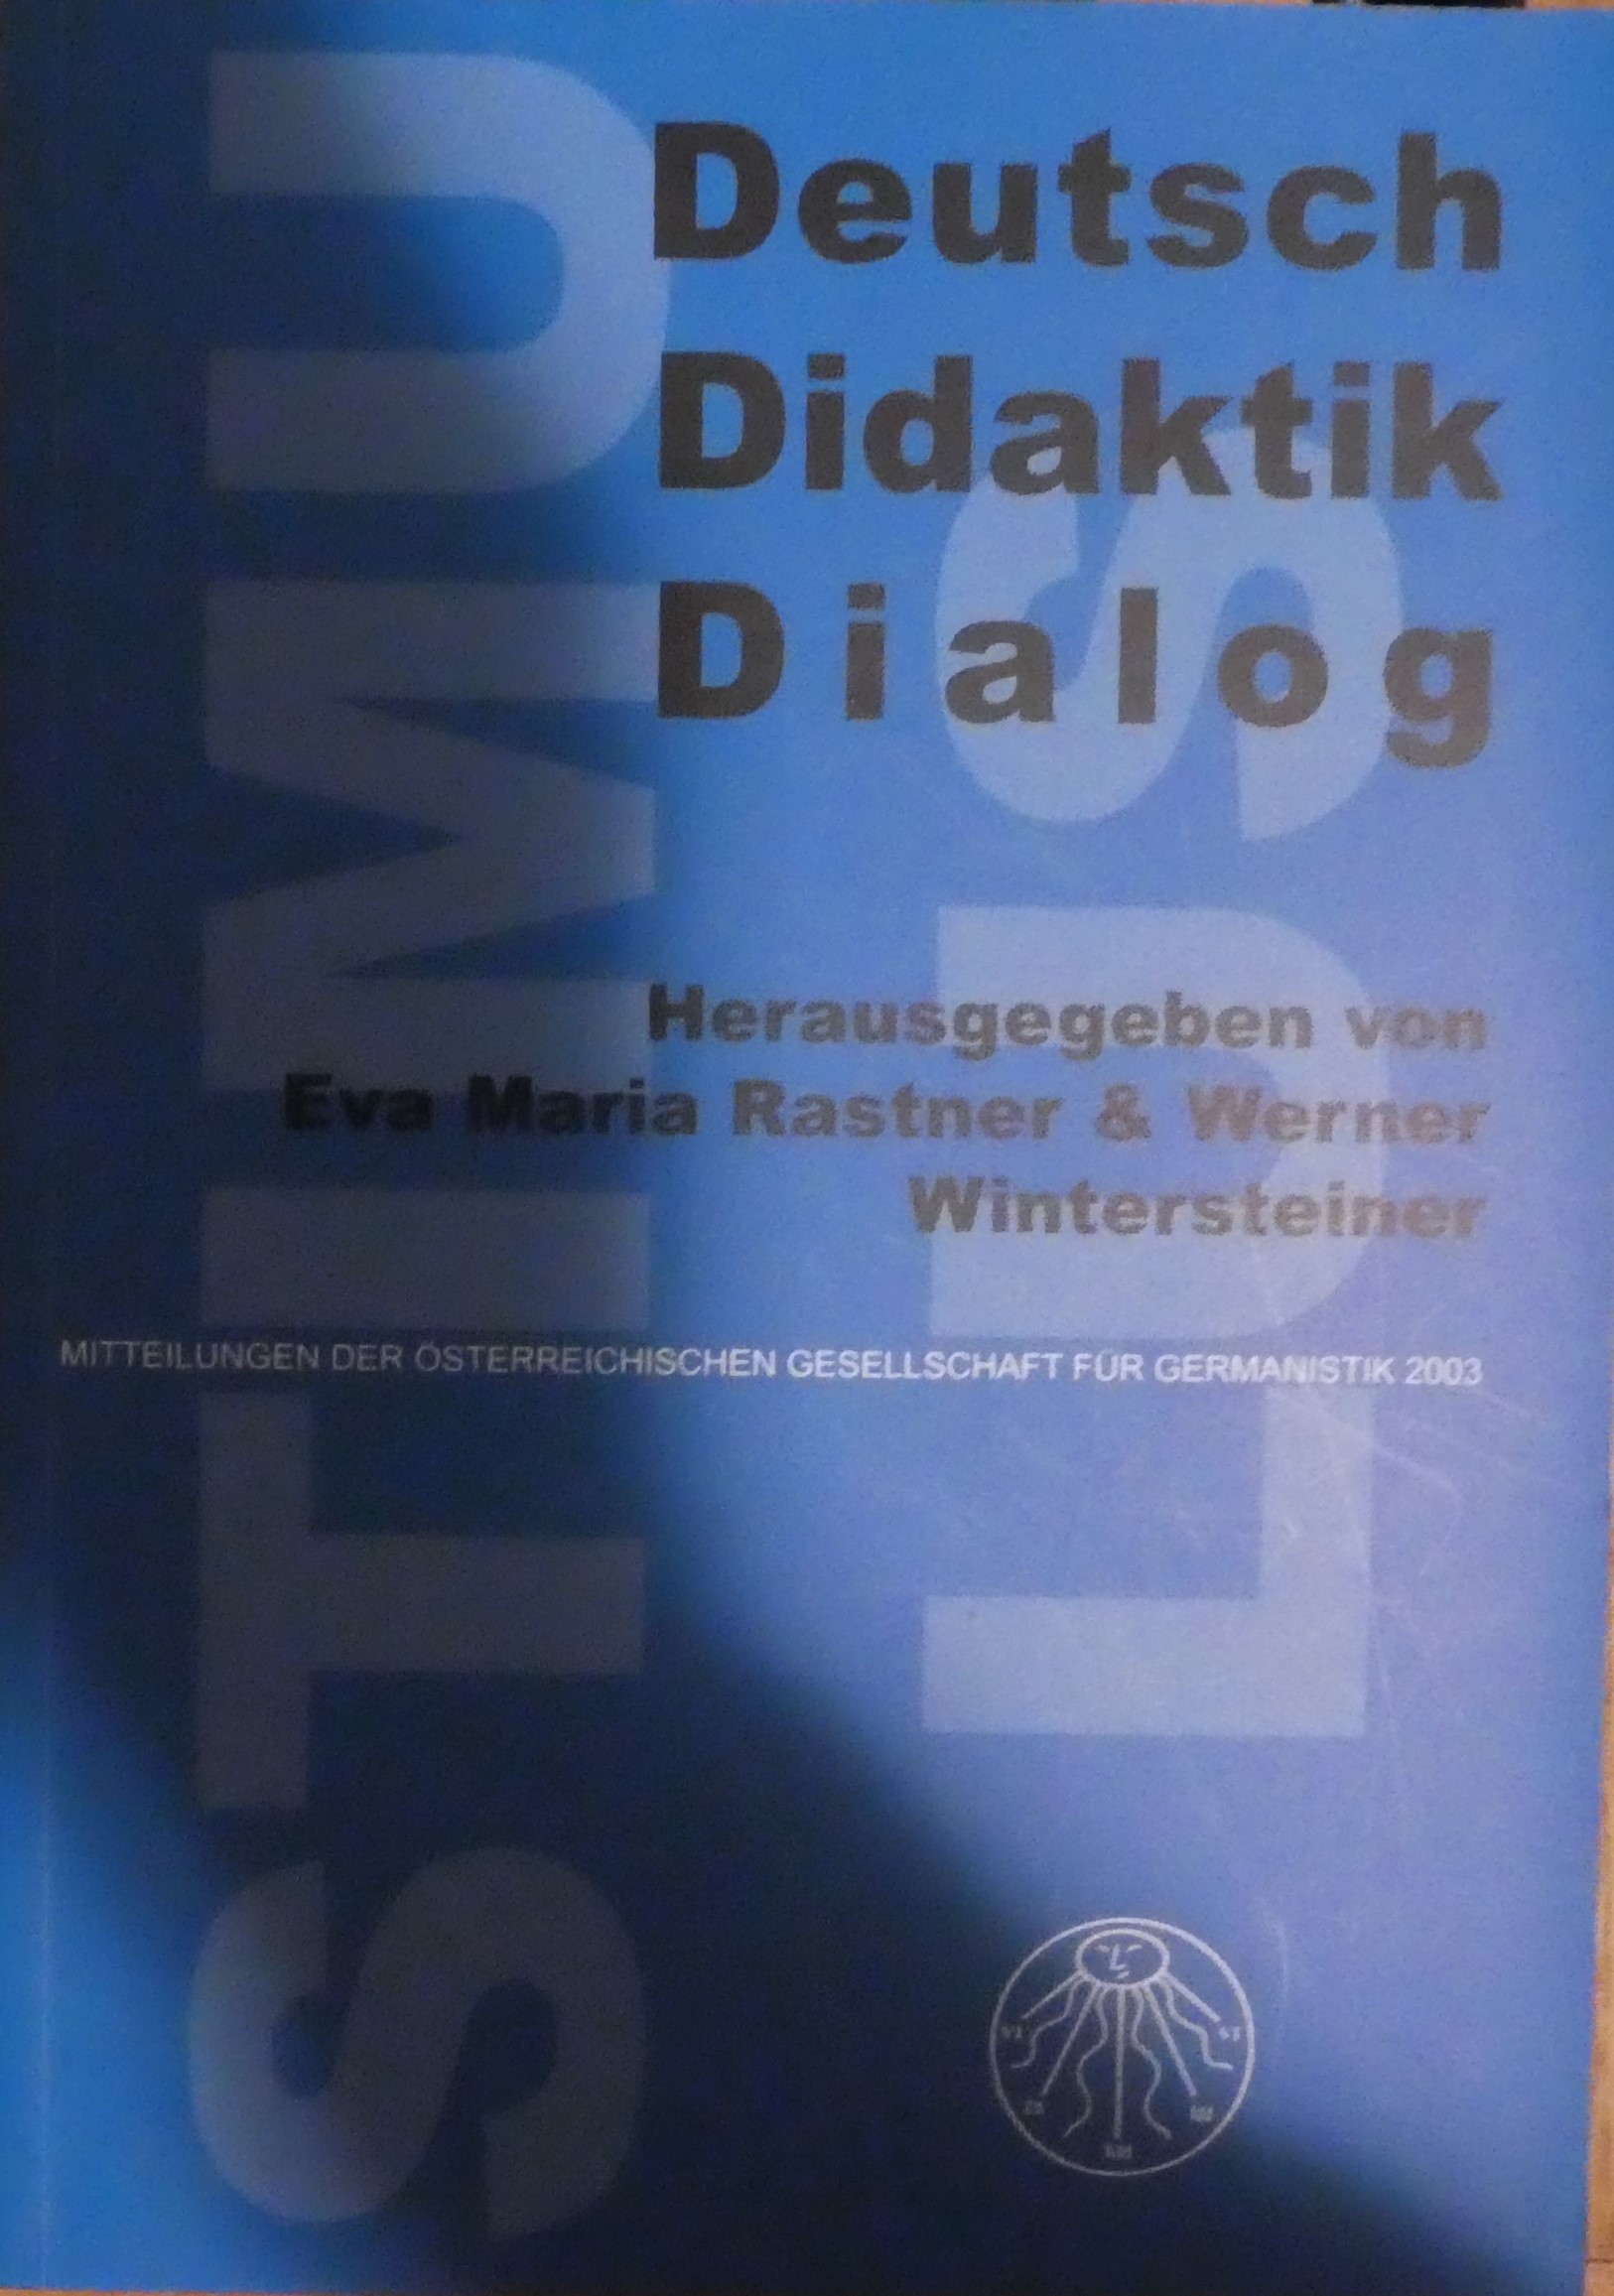 37 German didactics dialogue